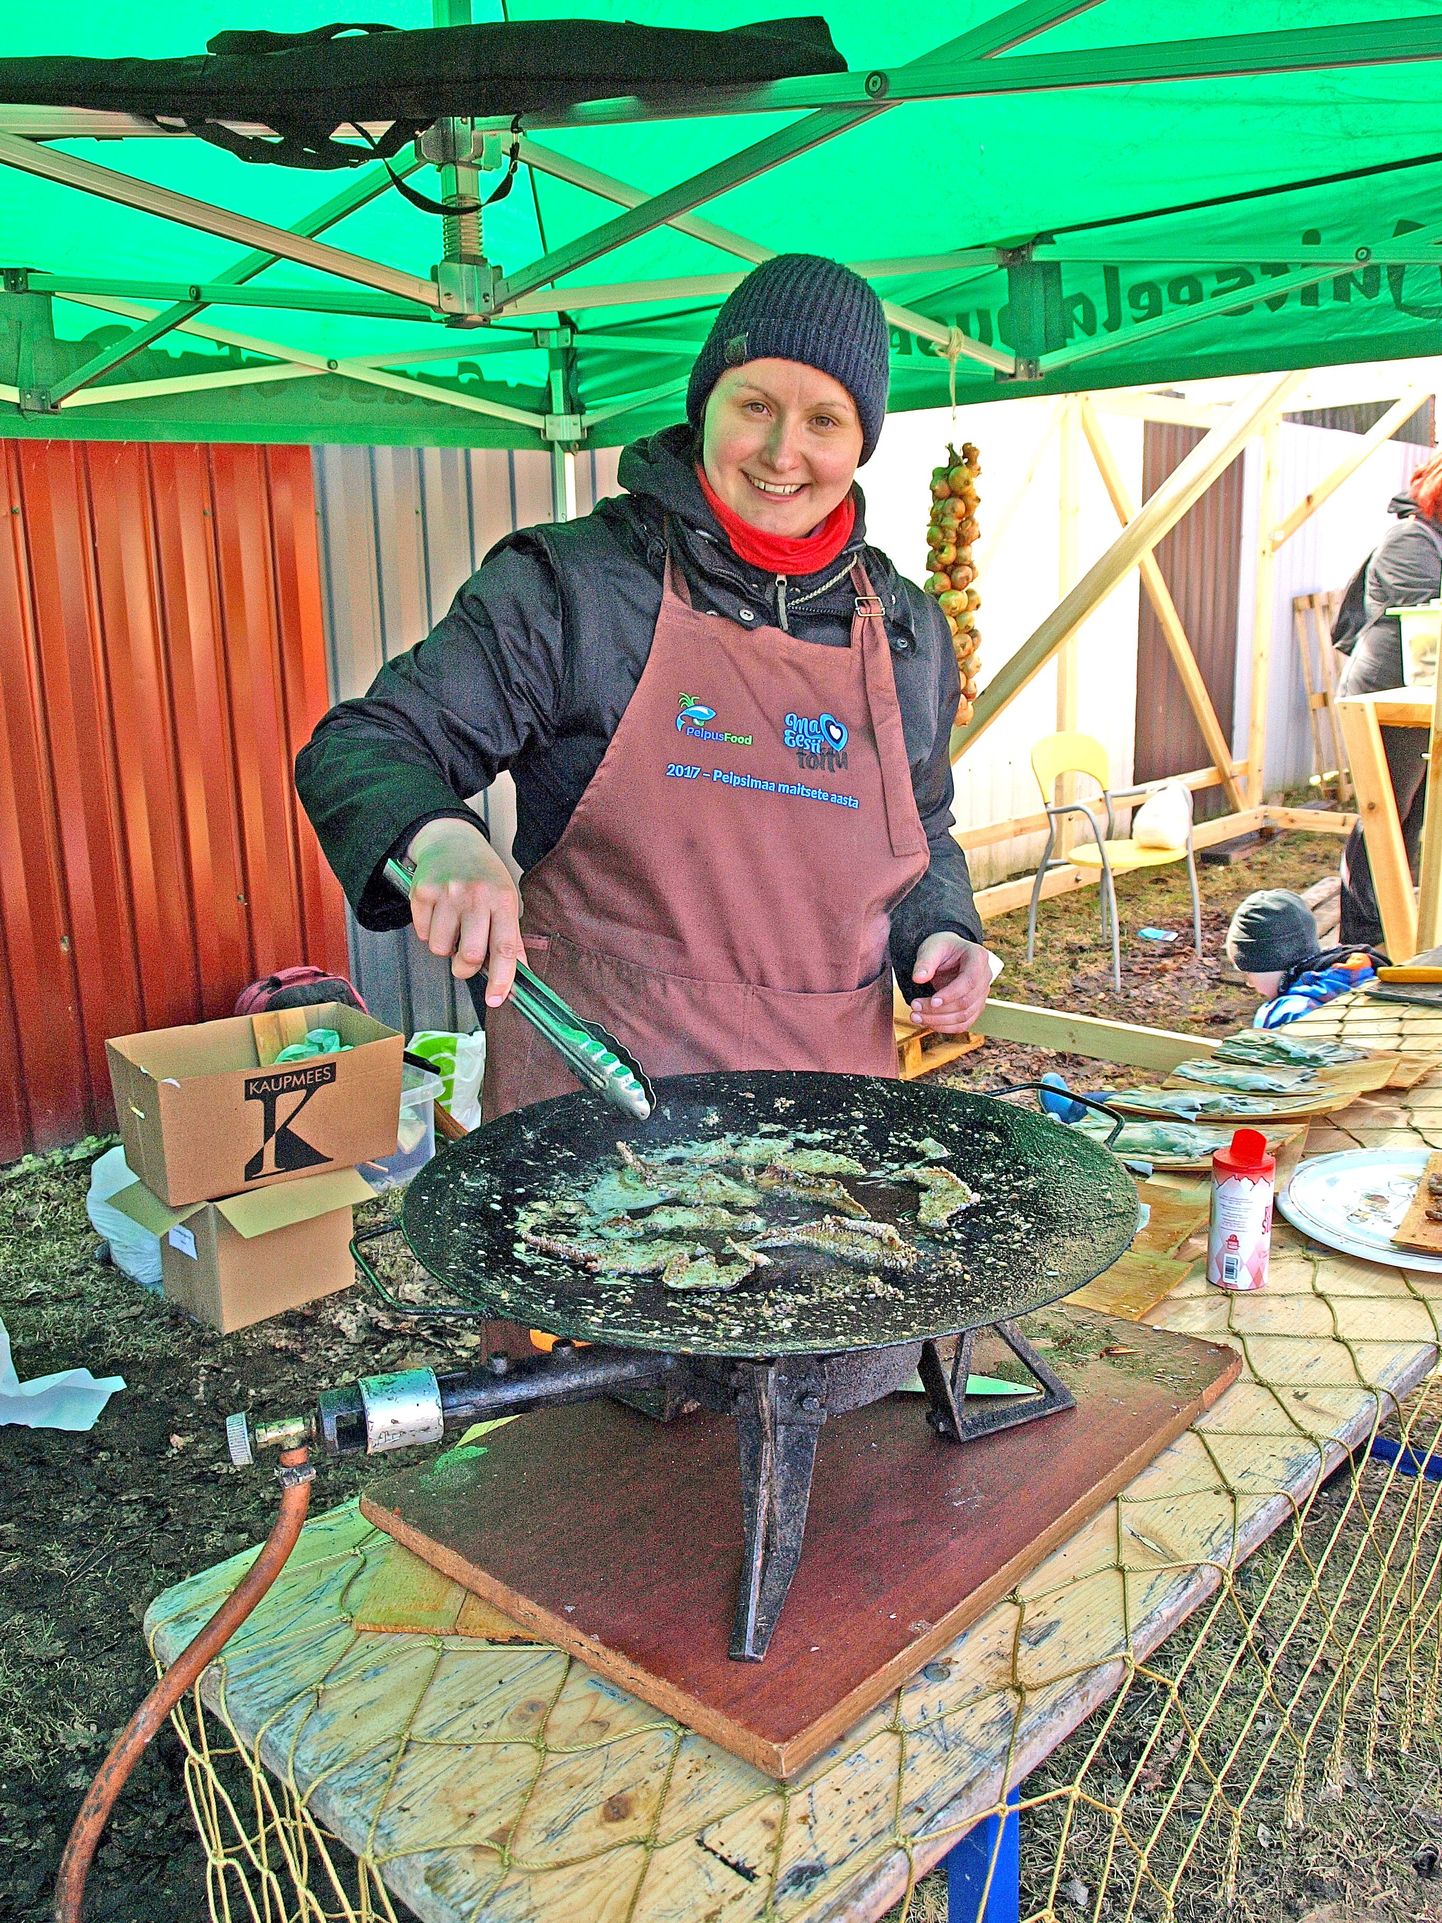 MTÜ Peipsimaa kogukonnaköök eestvedaja Triinu Akkermann õpetas viimati Varnja kalalaadal ahvenanahast krõpsude valmistamist.